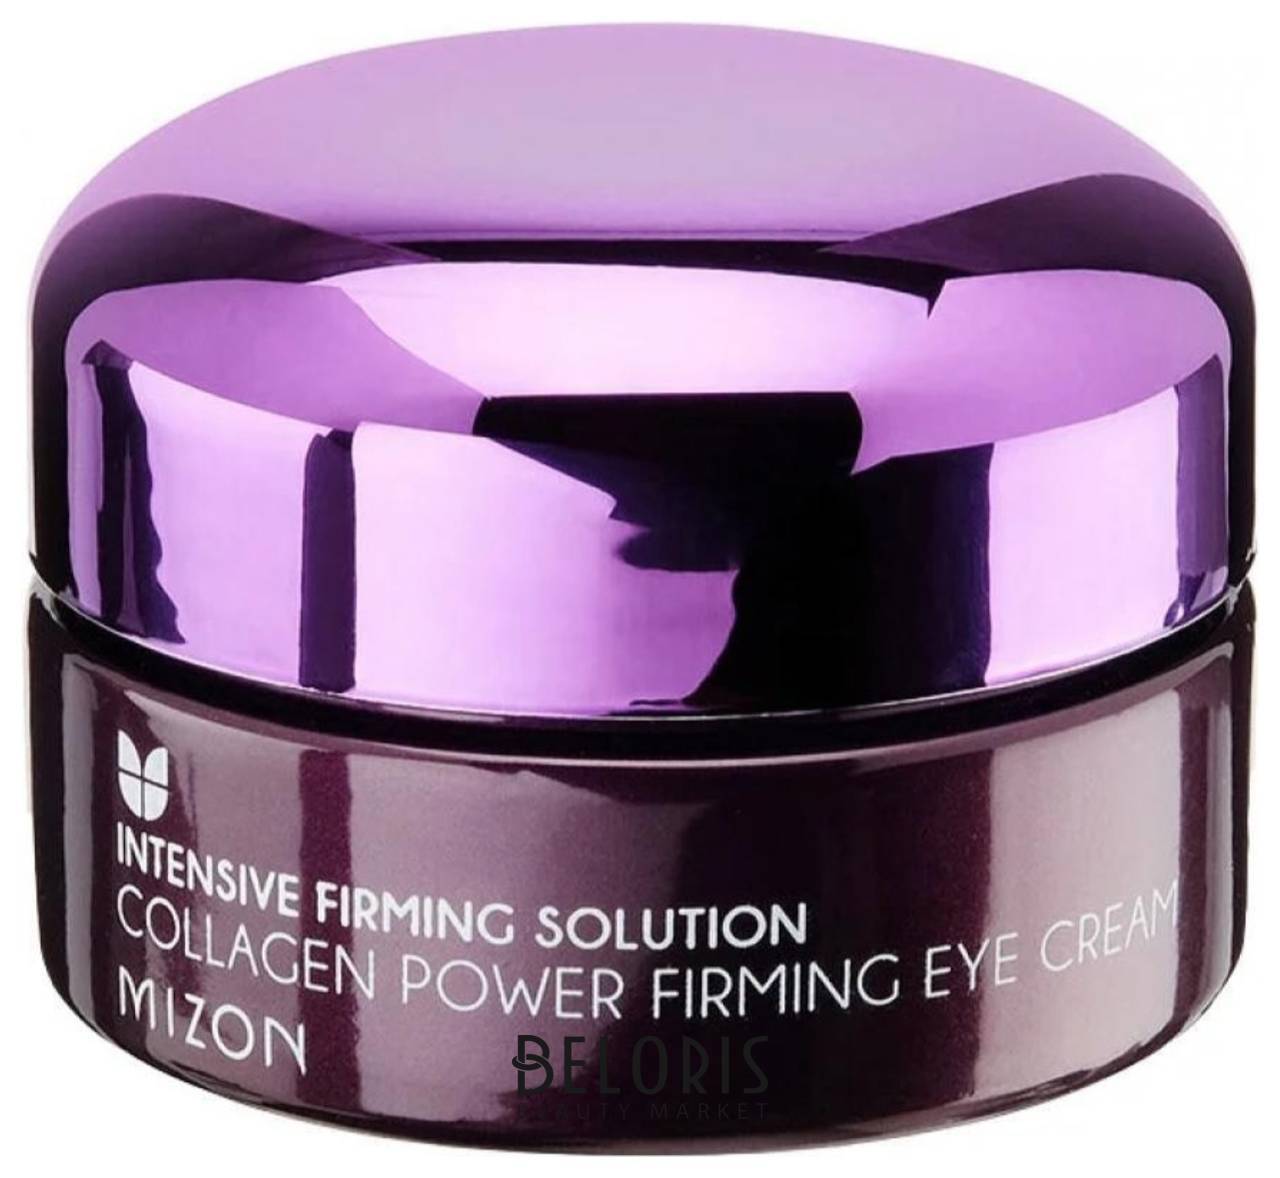 Коллагеновый крем для глаз Collagen Power Firming Eye Cream Mizon